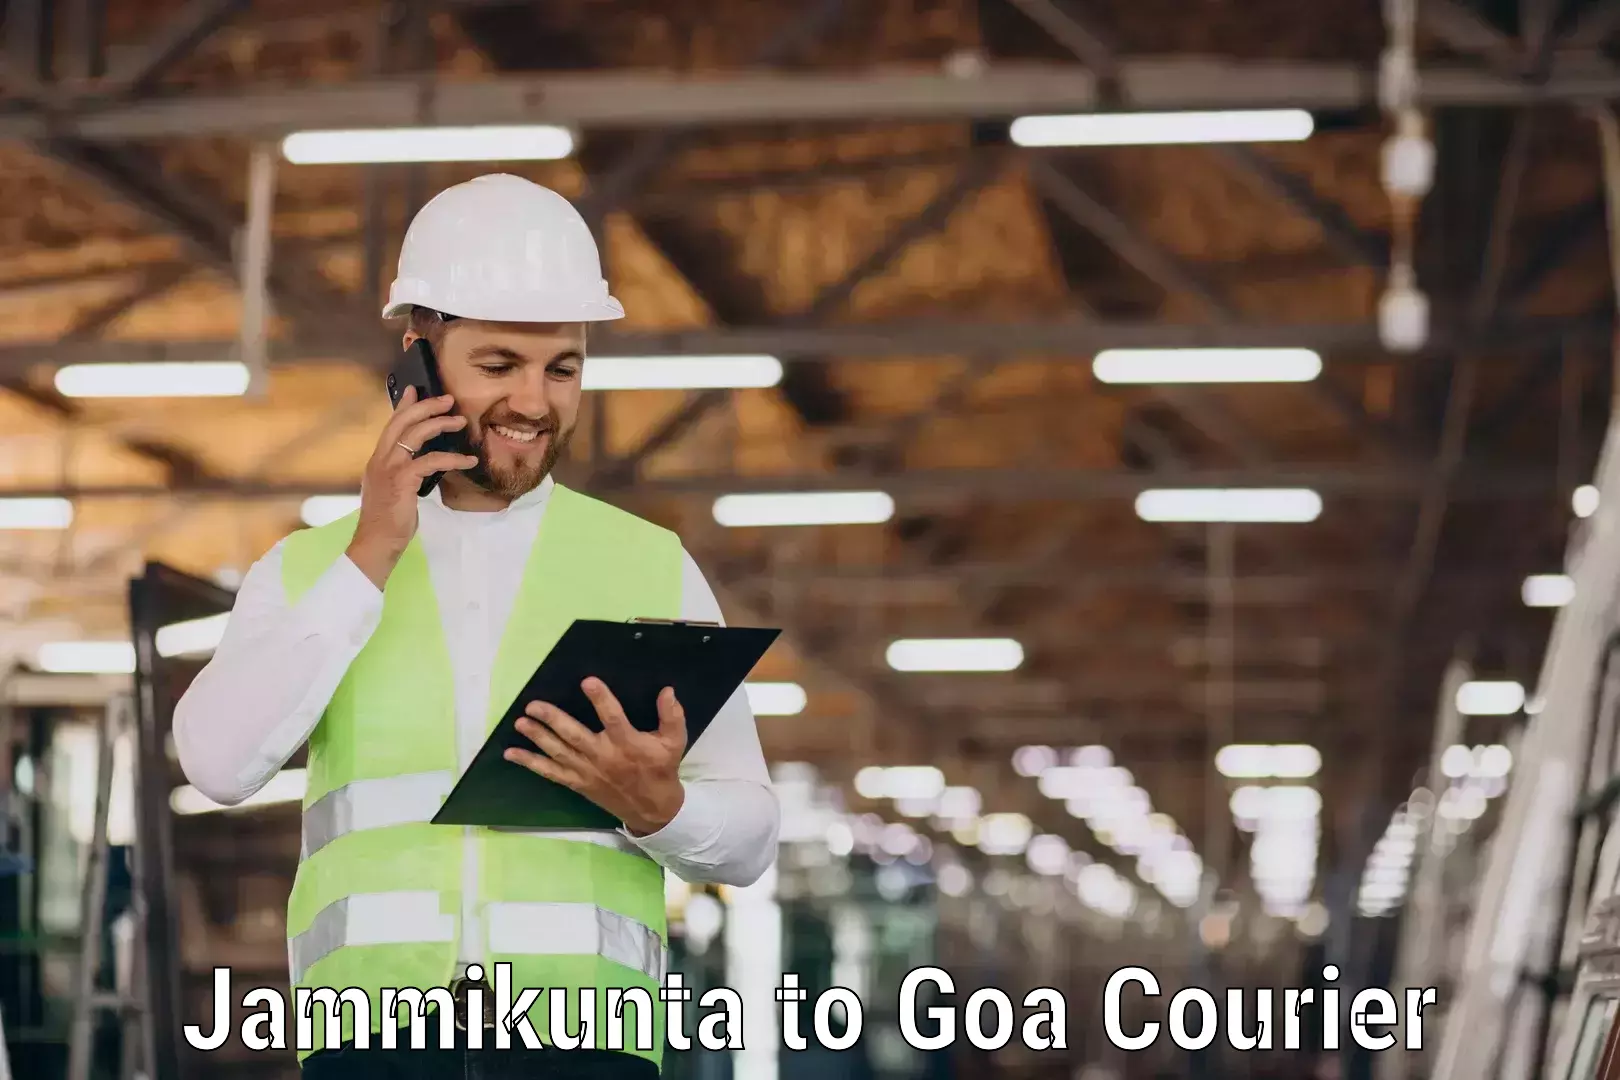 Local delivery service Jammikunta to Goa